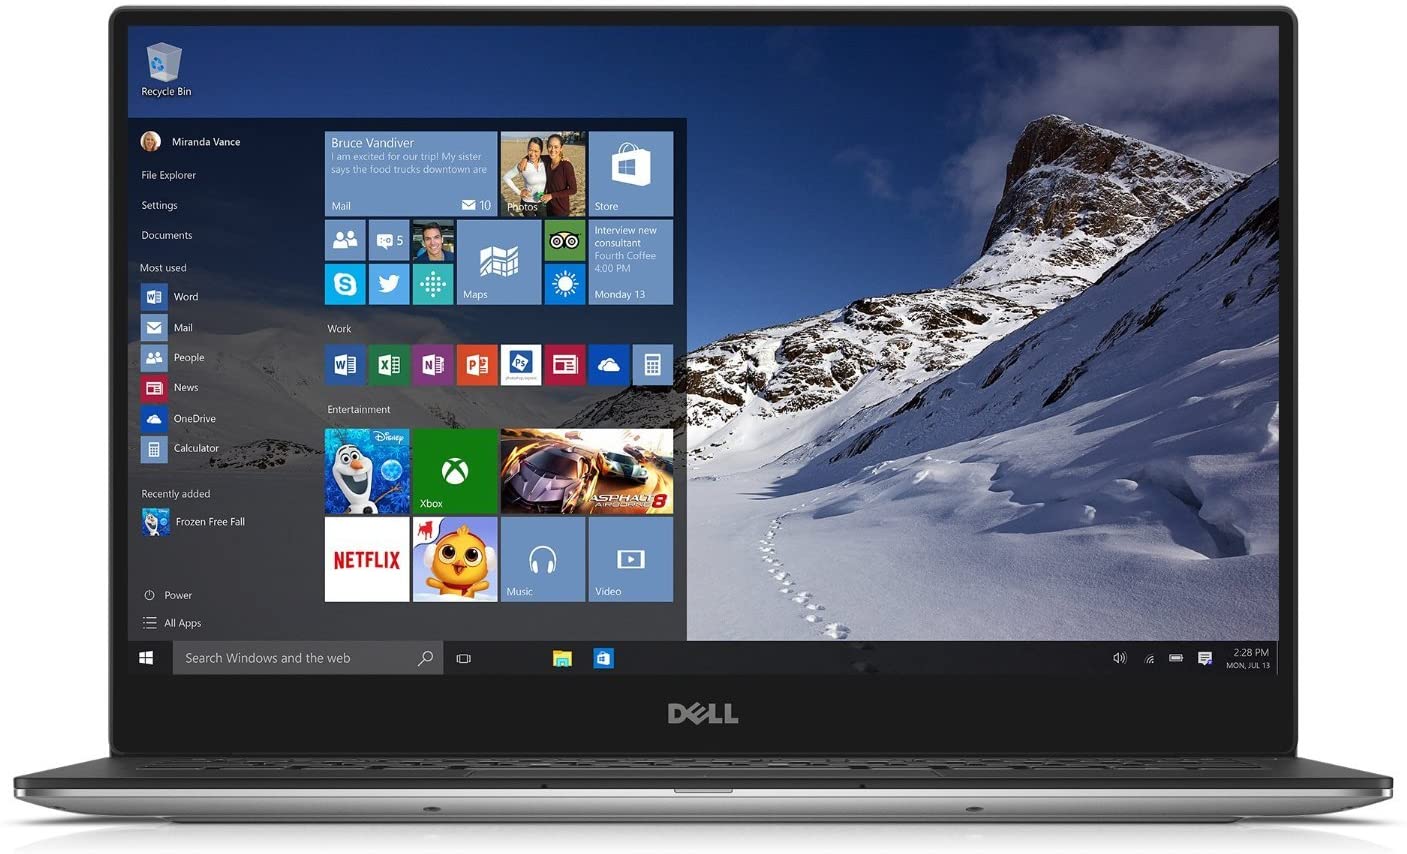 Refurbished Laptop Dell XPS 13 9343 13.3" Ultrabook  (Intel Core i3-5010U/4GB RAM/128GB SSD/Windows 10)